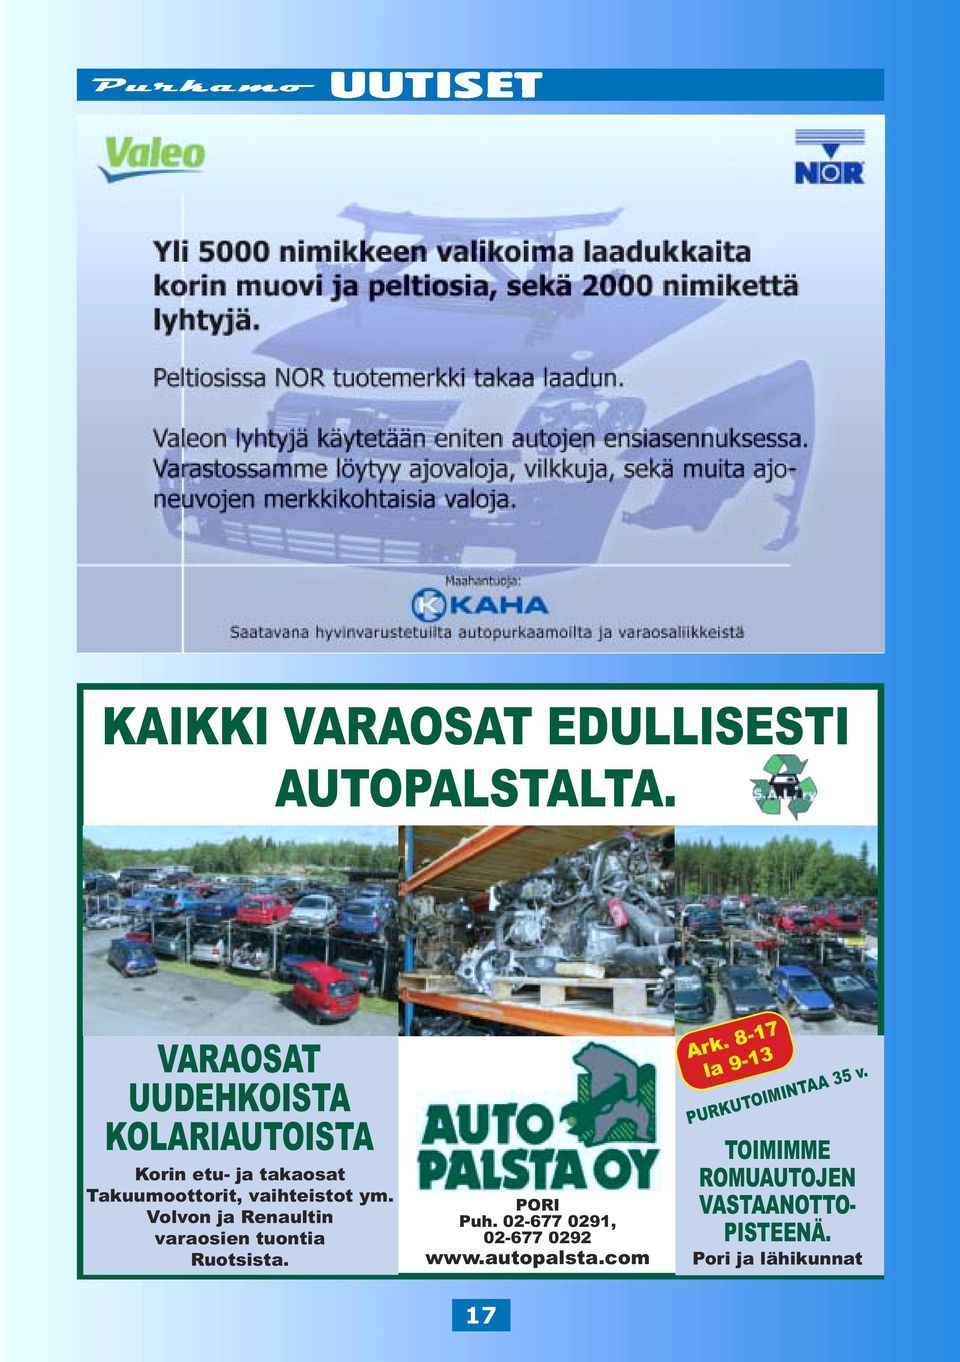 vaihteistot ym. Volvon ja Renaultin varaosien tuontia Ruotsista. PORI Puh.